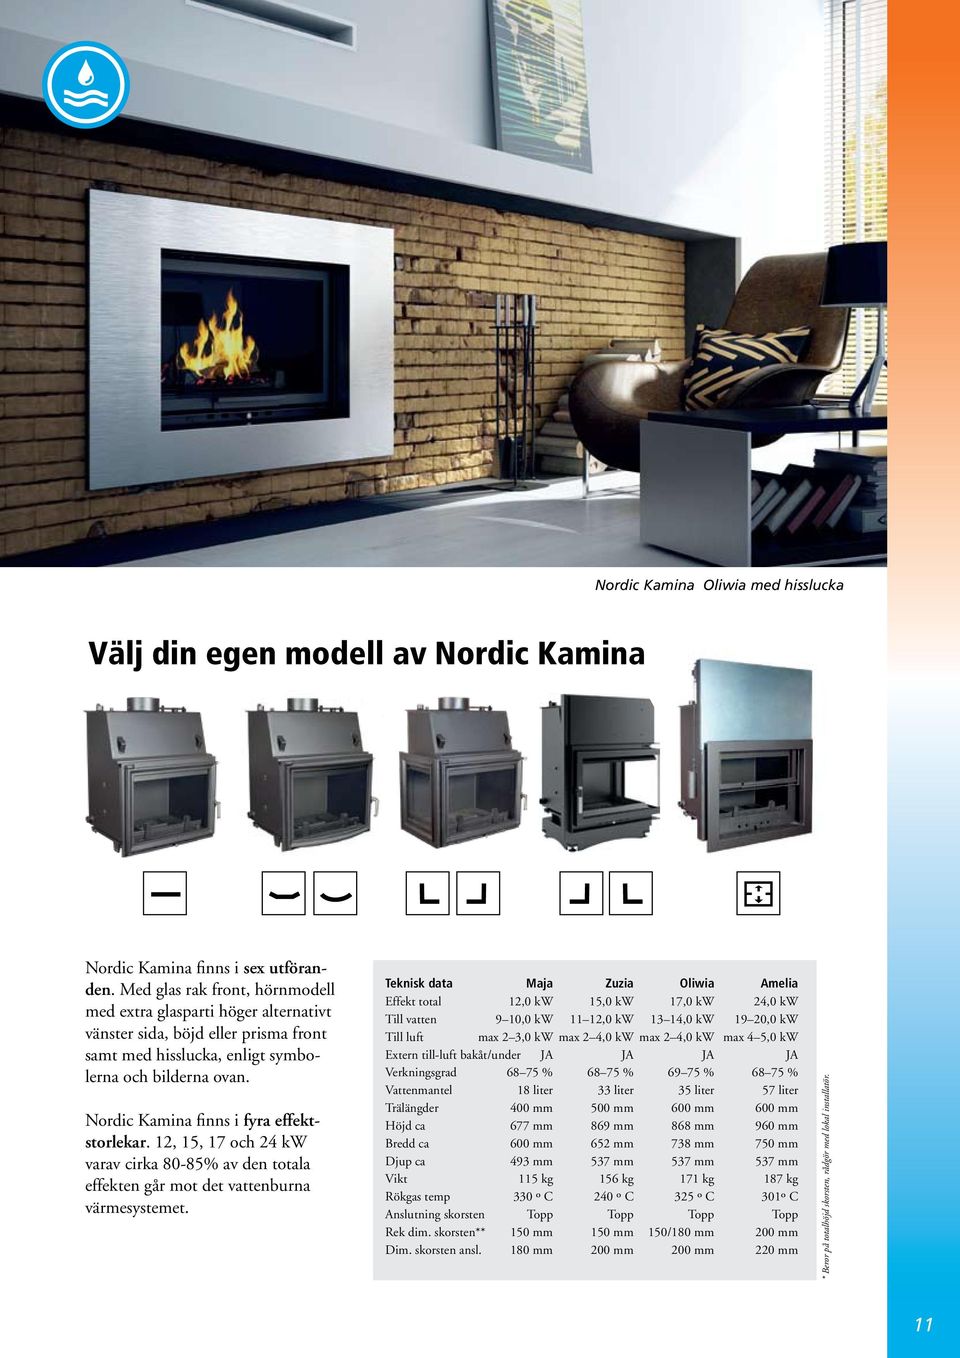 Nordic Kamina finns i fyra effektstorlekar. 12, 15, 17 och 24 kw varav cirka 80-85% av den totala effekten går mot det vattenburna värmesystemet.